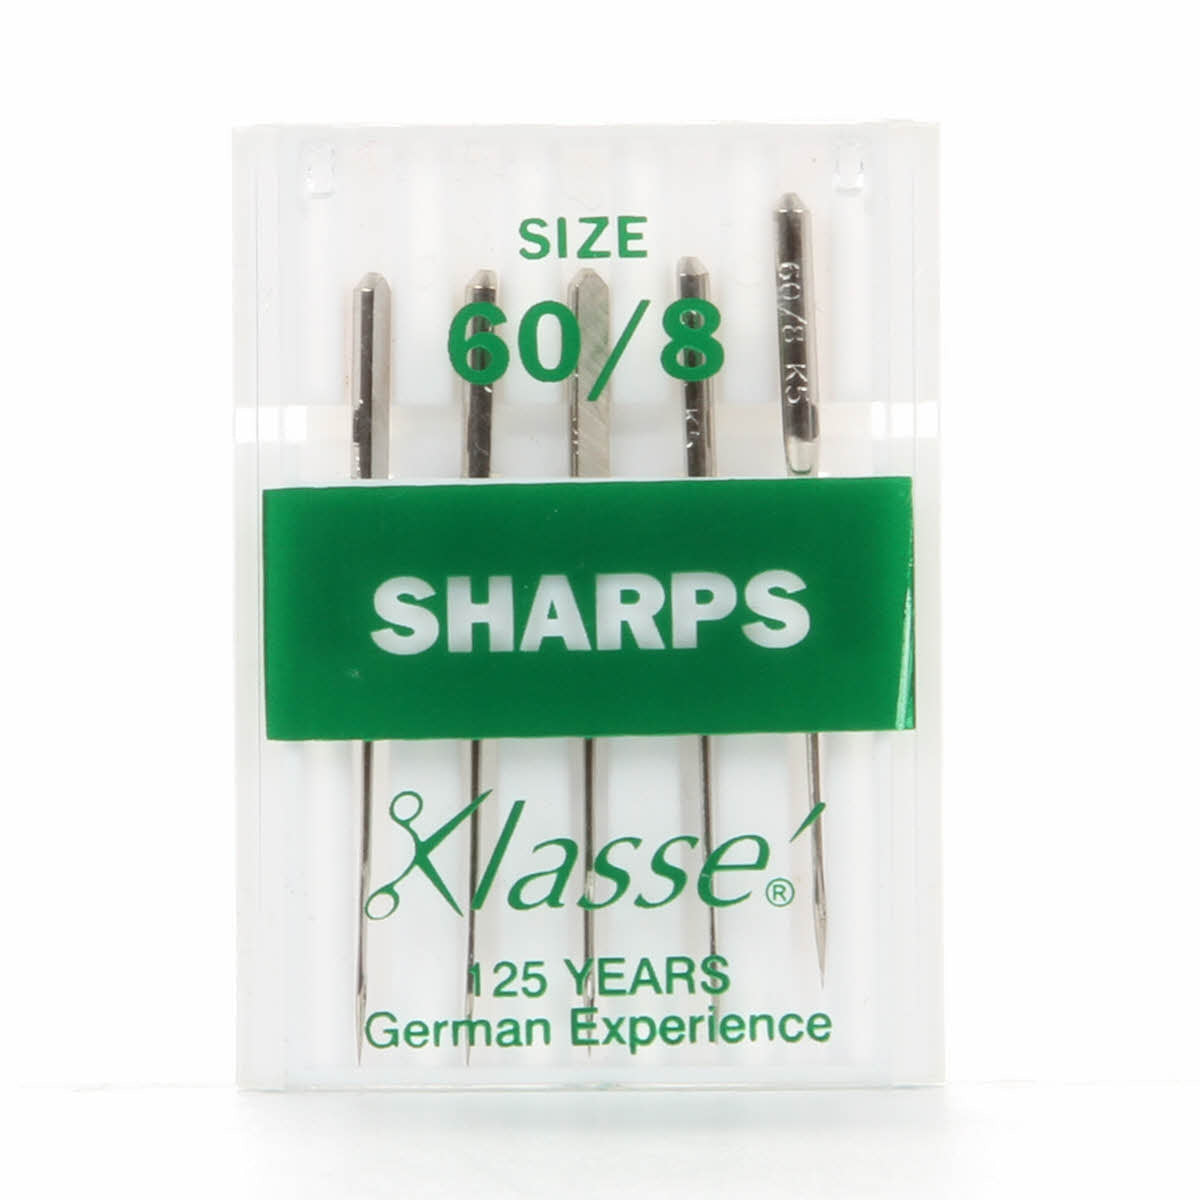 KLASSE´ Sharps / Microtex Needles Cassette - Size 60/8 - 5 count